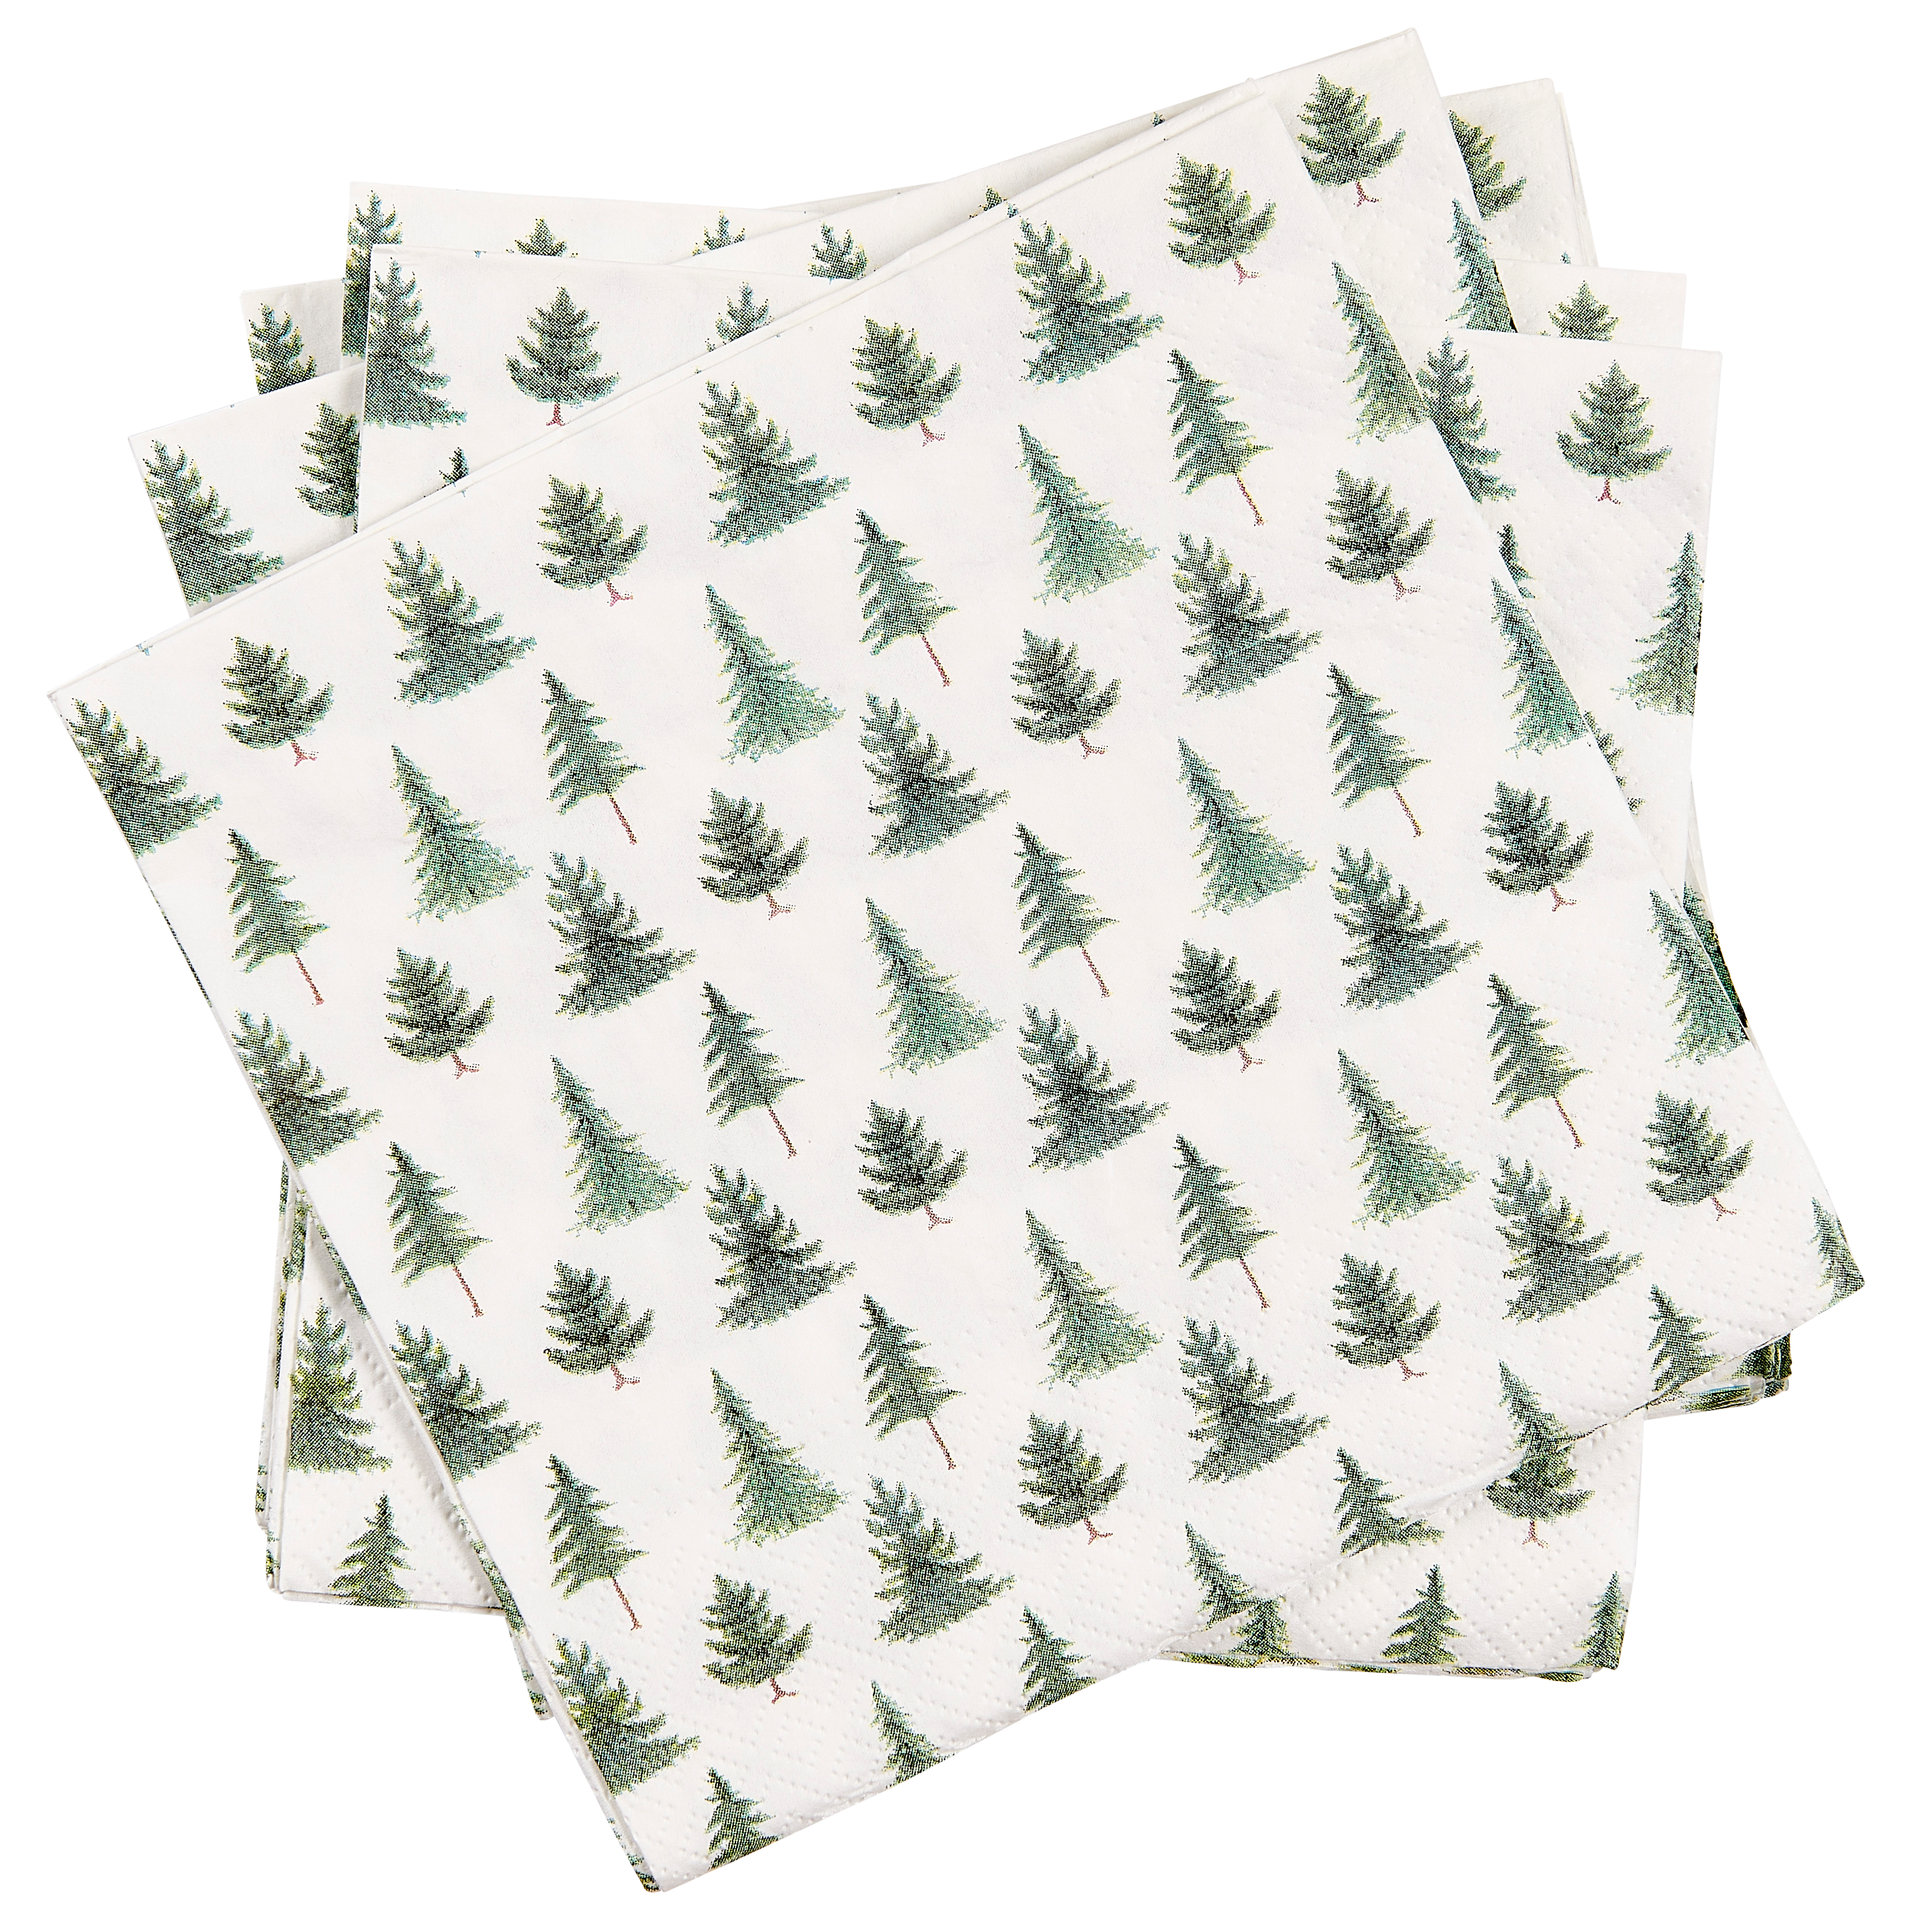 dimensioni 33 x 33 cm foulard Procos 92206 feste 20 pezzi motivo: fenicottero Tovaglioli di carta decorazione da tavola compostabili estive 